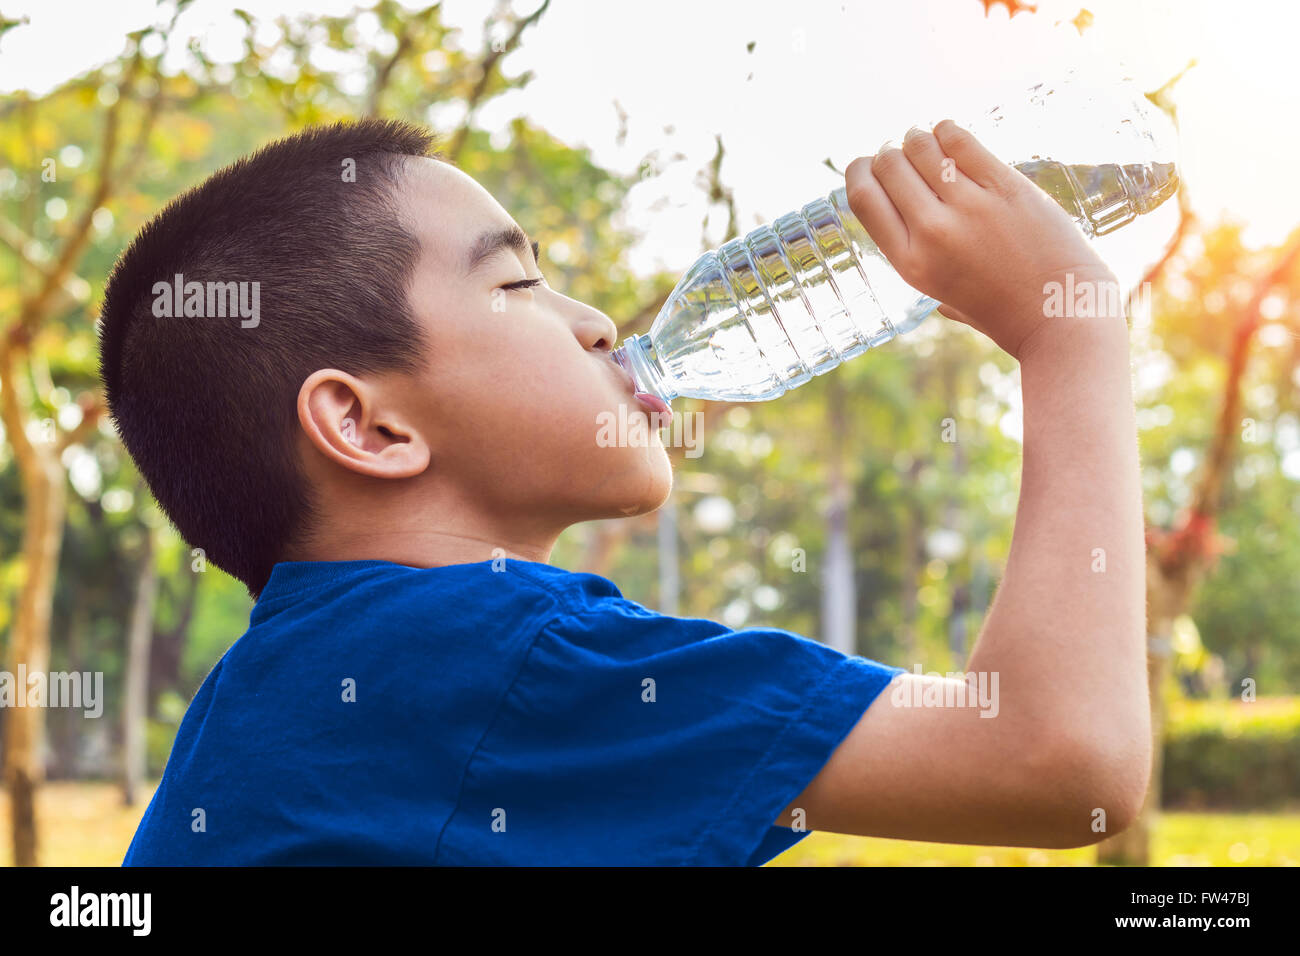 Une photo d'un garçon de la bouteille de l'eau potable Banque D'Images